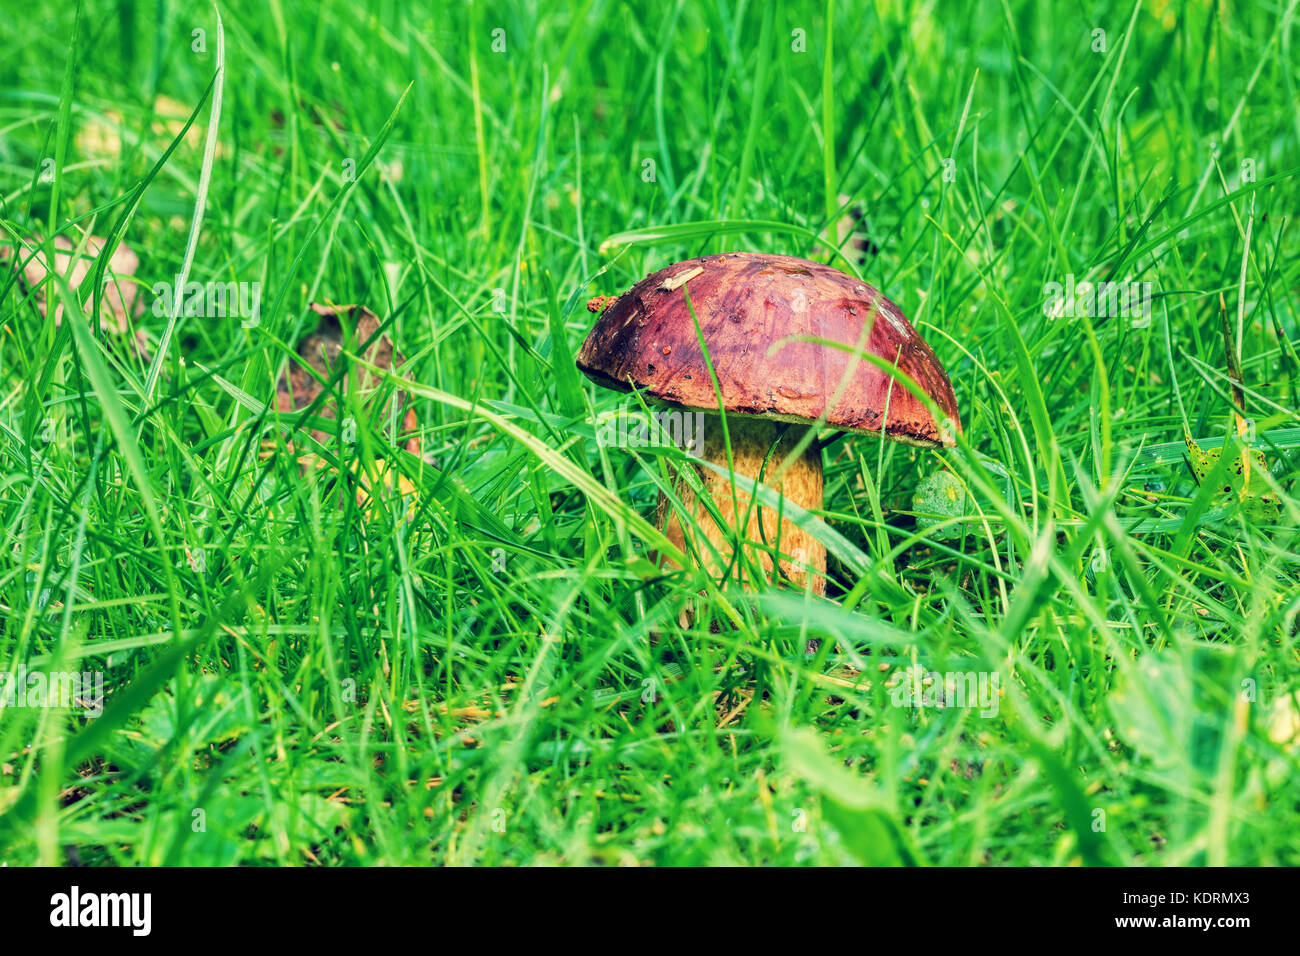 mushroom growing on autumn grass Stock Photo